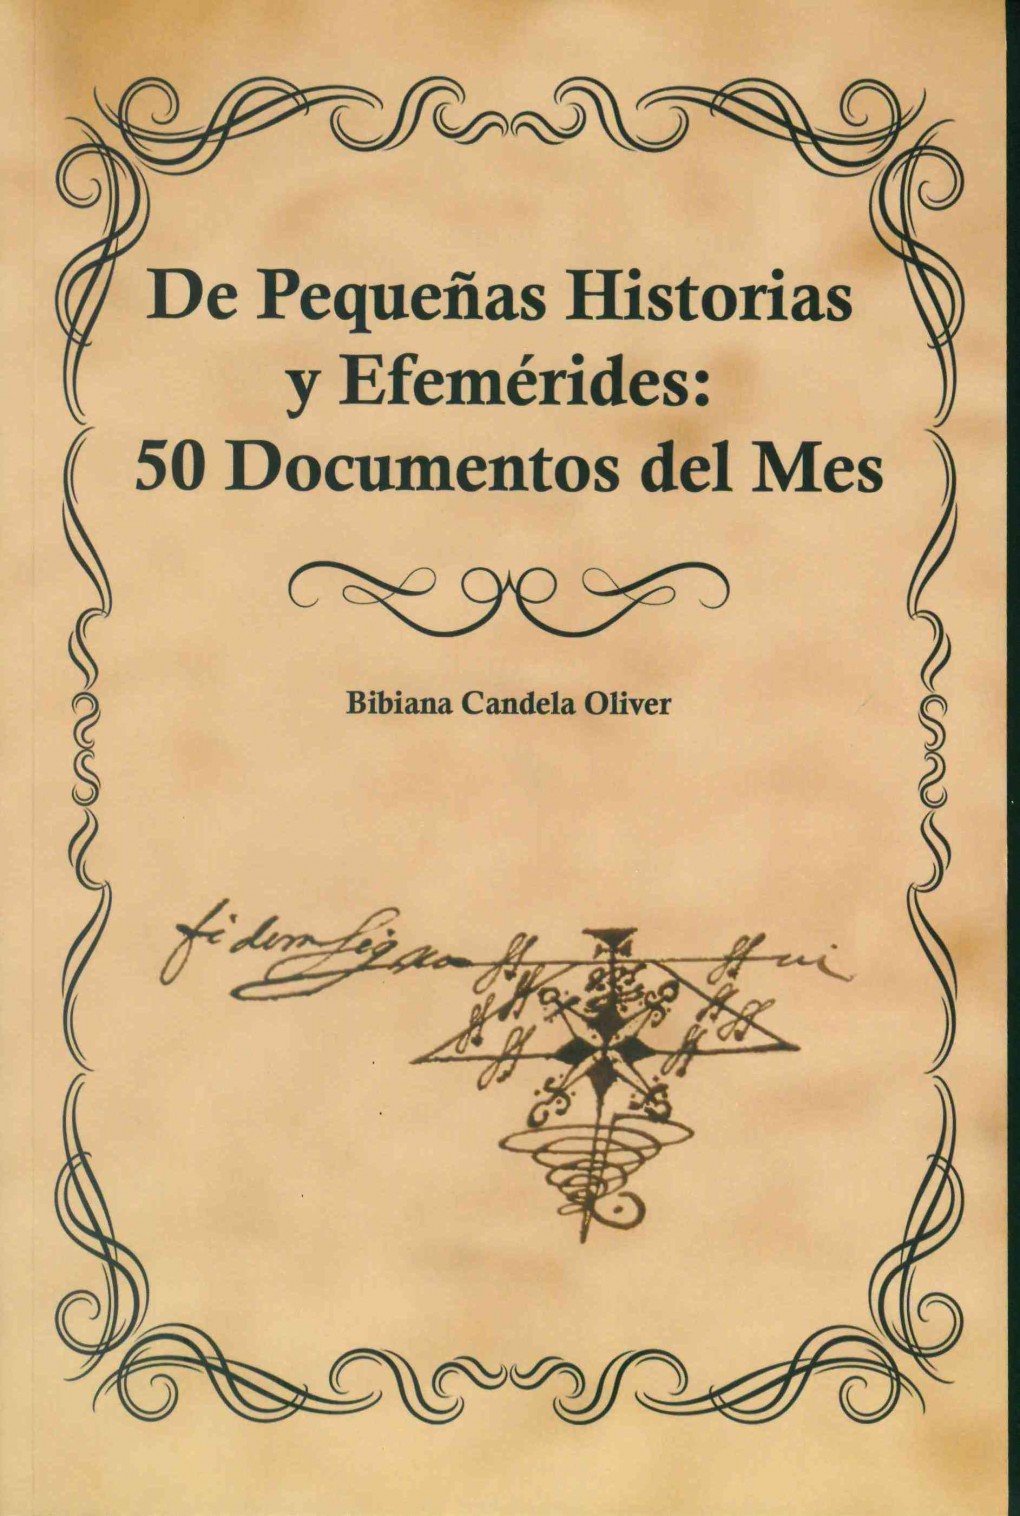 PRESENTACIÓN LIBRO DEL ARCHIVO MUNICIPAL, “DE PEQUEÑAS HISTORIAS Y EFEMÉRIDES: 50 DOCUMENTOS DEL MES”